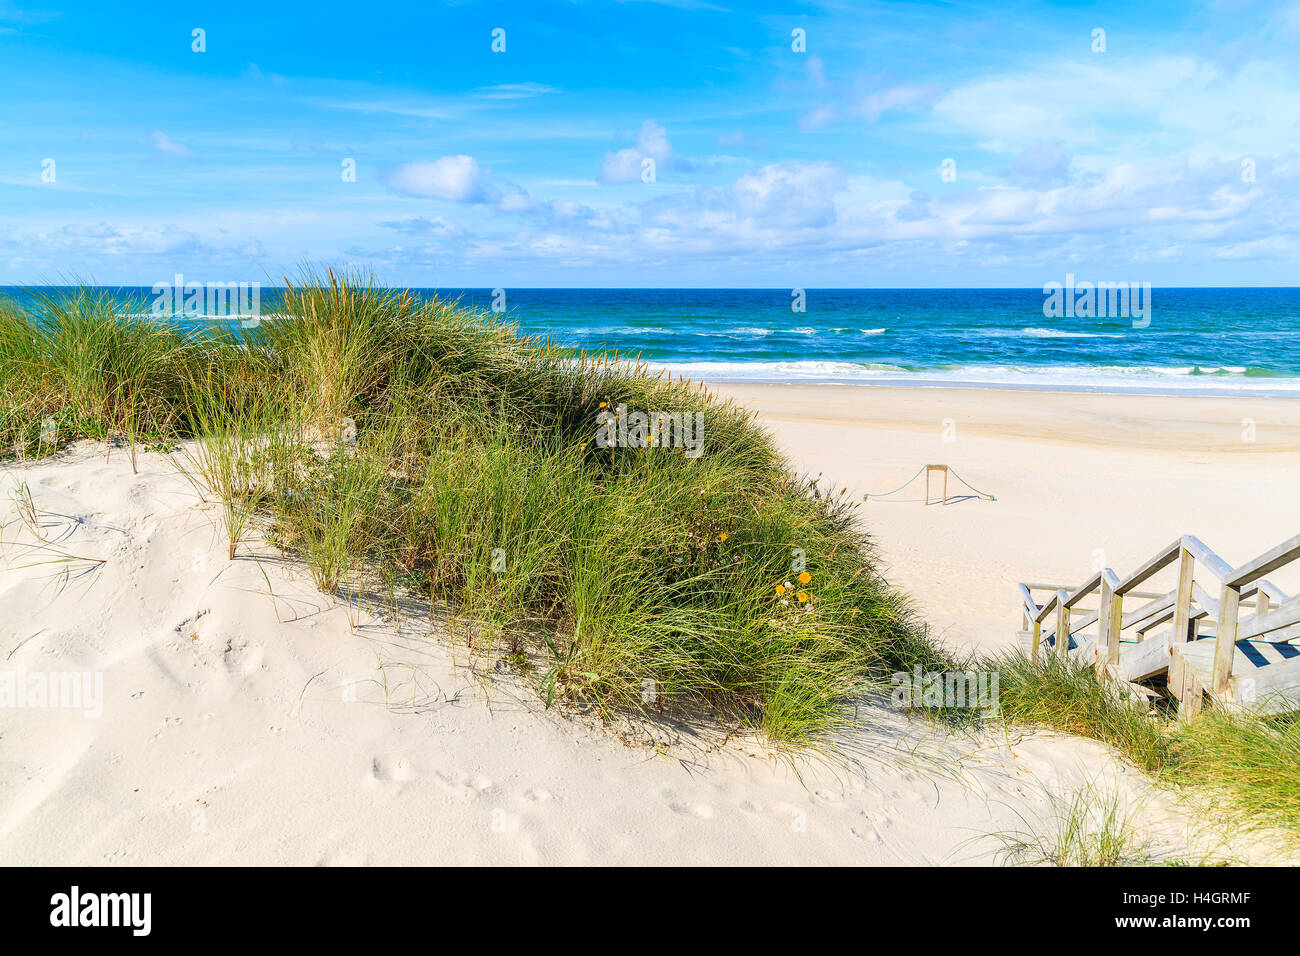 Erba verde sulla duna di sabbia in spiaggia Elenco, isola di Sylt, Germania Foto Stock